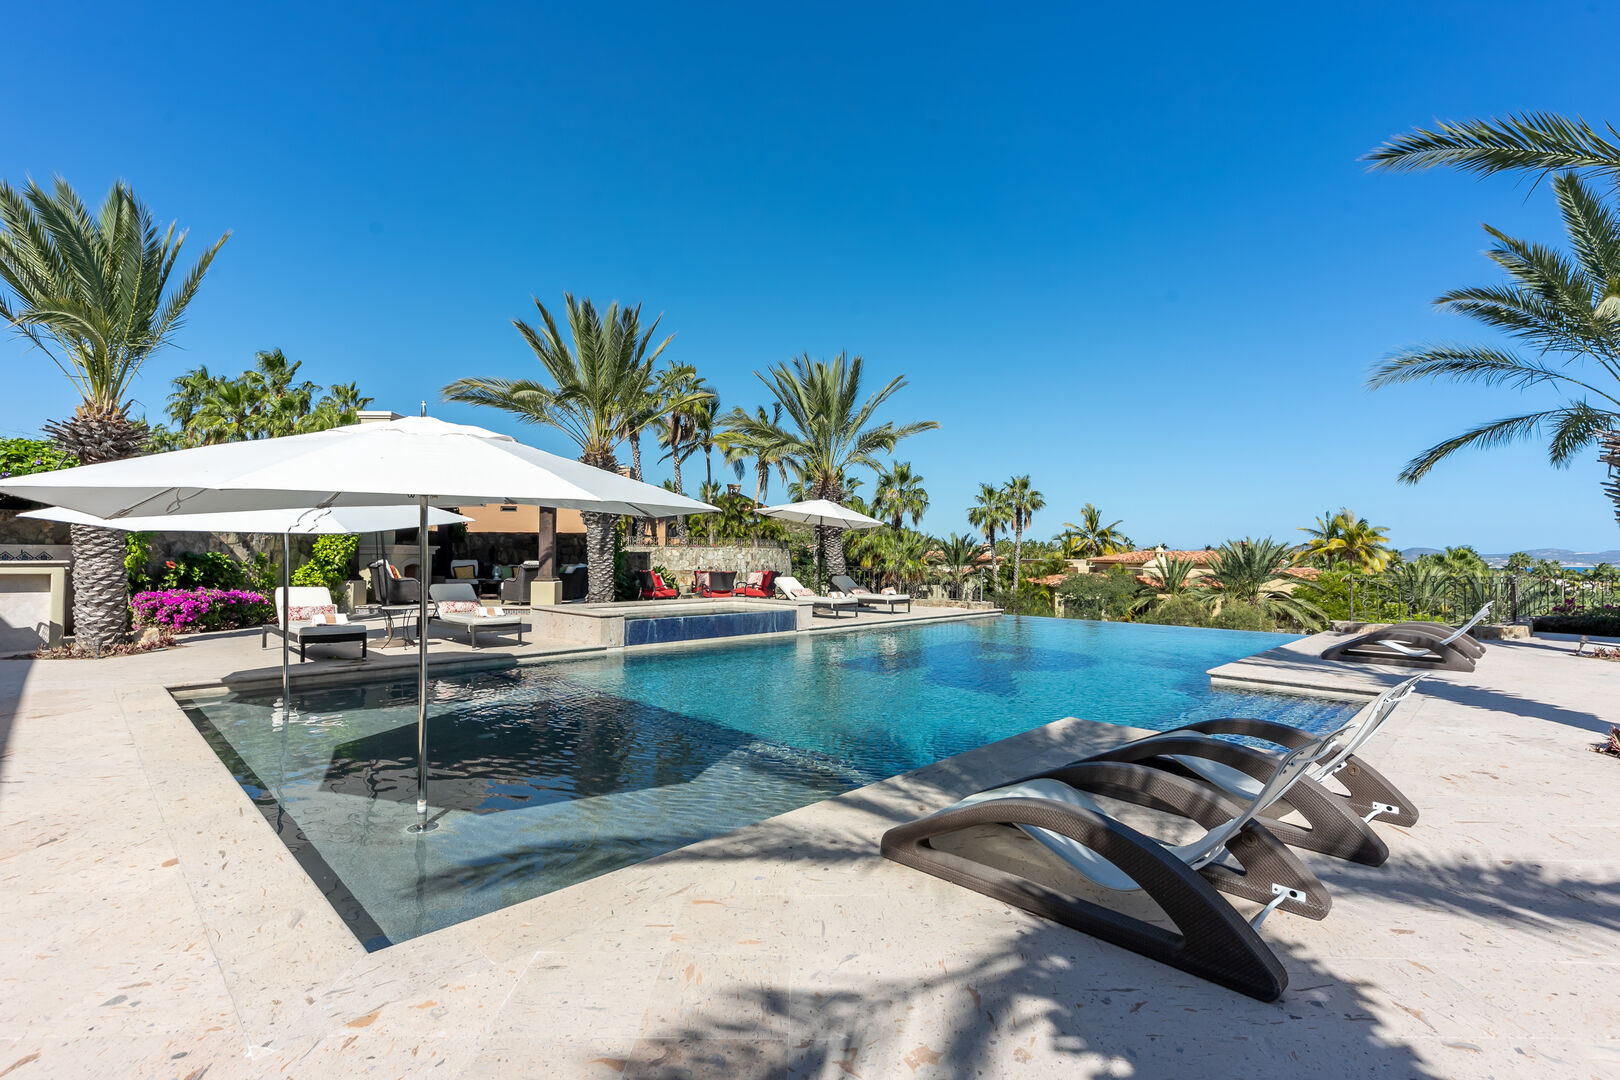 The infinity pool at Espiritu Casita 7 villa in Los Cabos